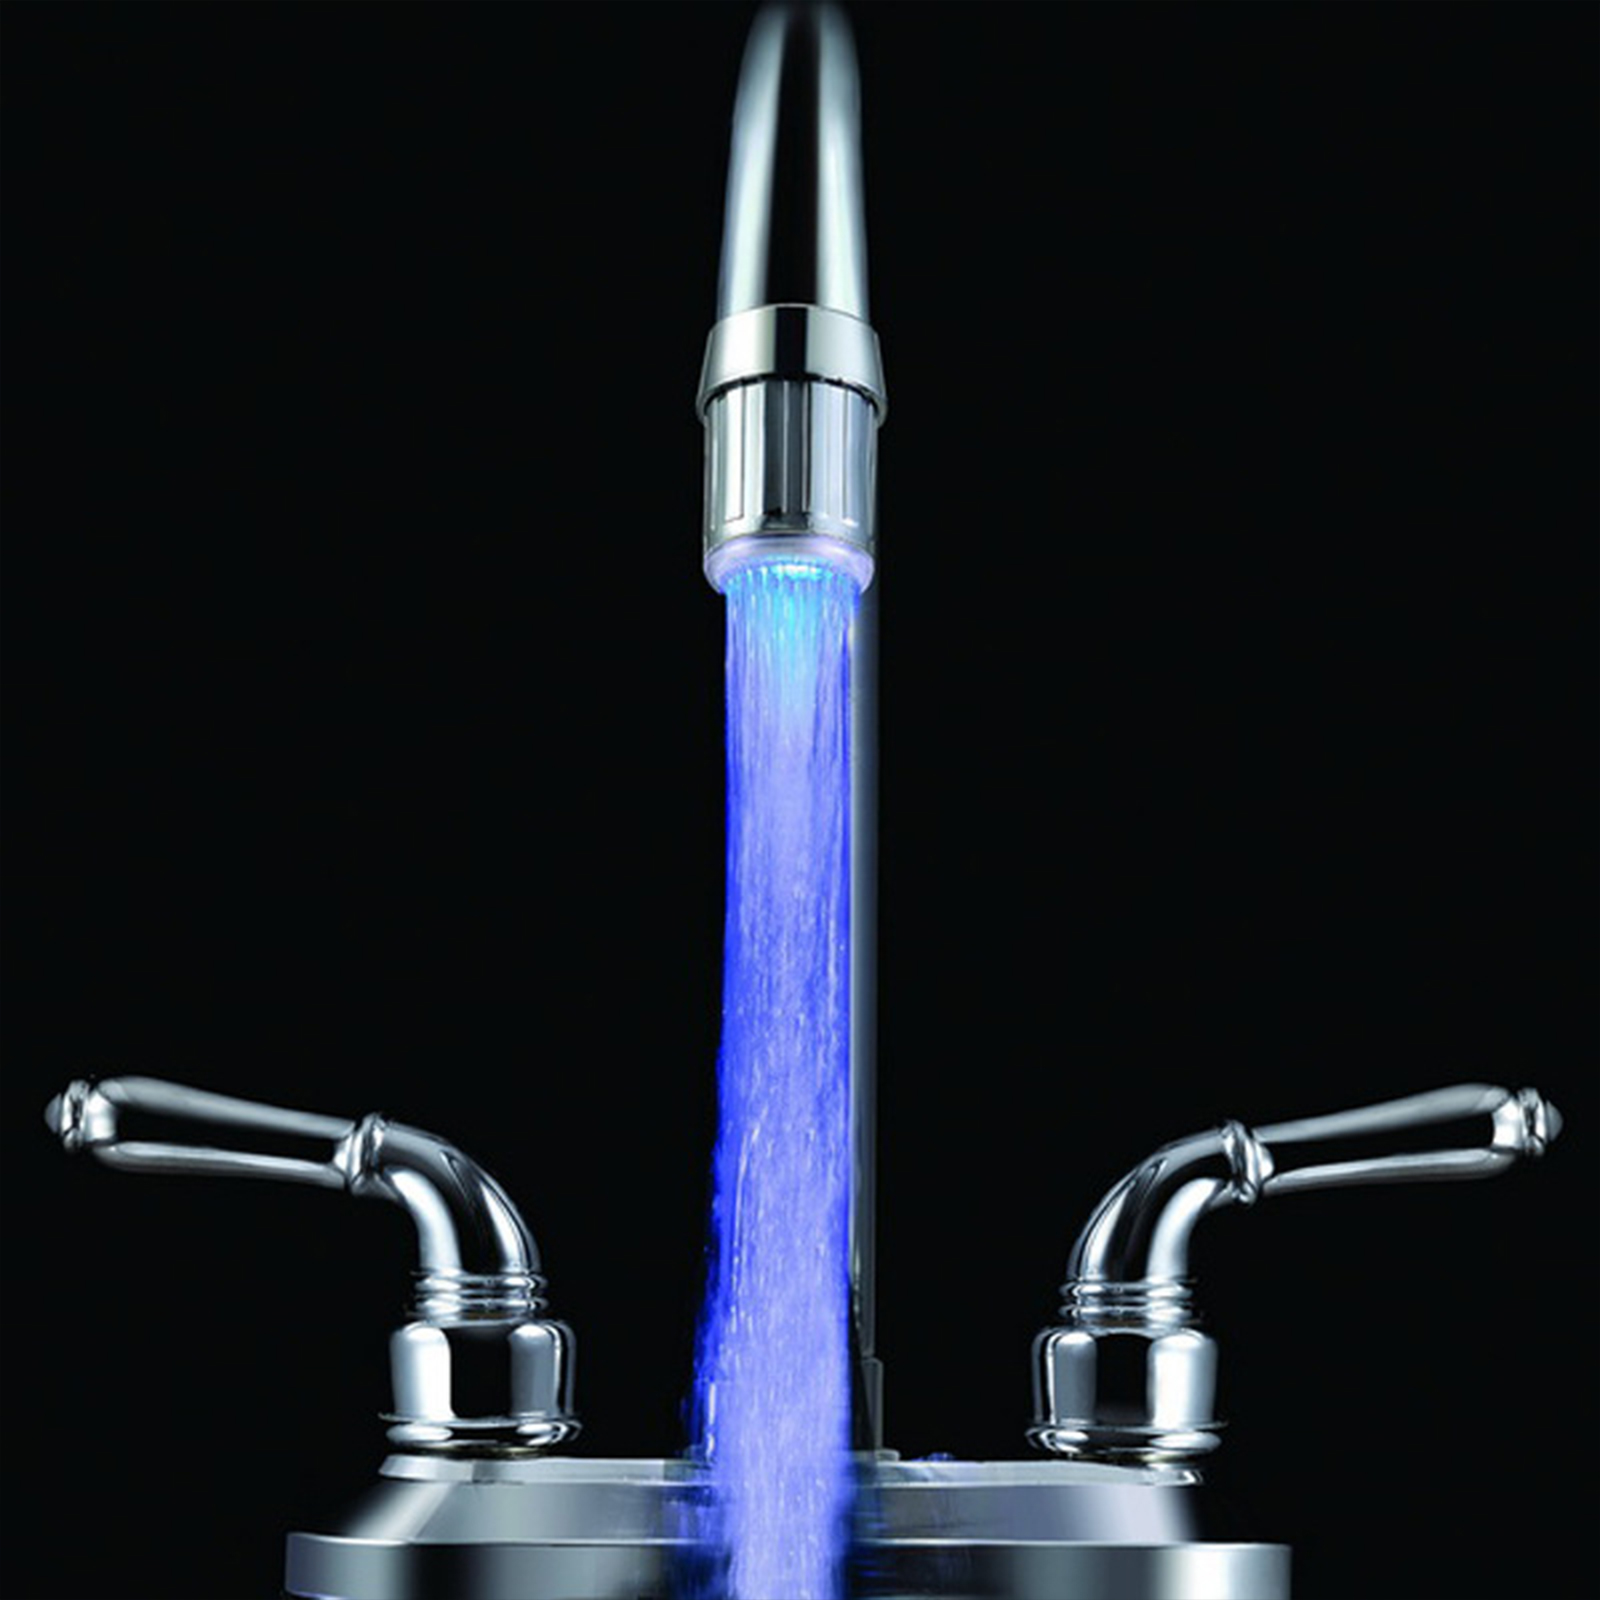 Kreative LED -Beleuchtung Wasserhahn Lichter Duschmischer Küche Badezimmer Wasserhahn ohne externe Stromversorgung